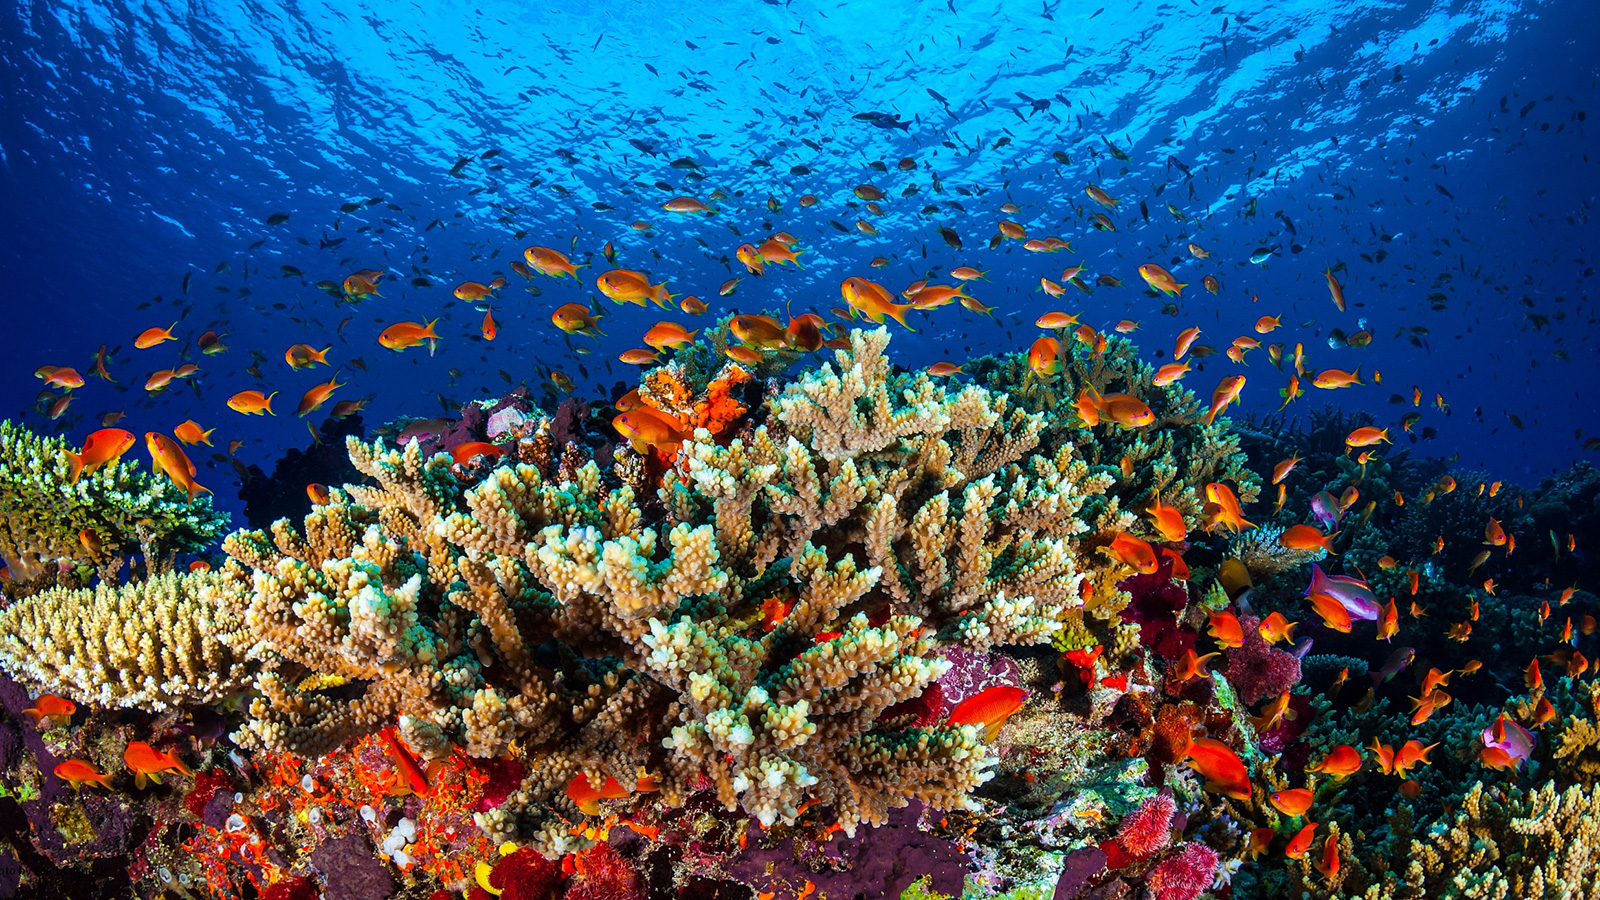 يعتبر الحاجز المرجاني الكبير في أستراليا من أكبر وأجمل نظم الشعاب المرجانية في العالم (الأوروبية)